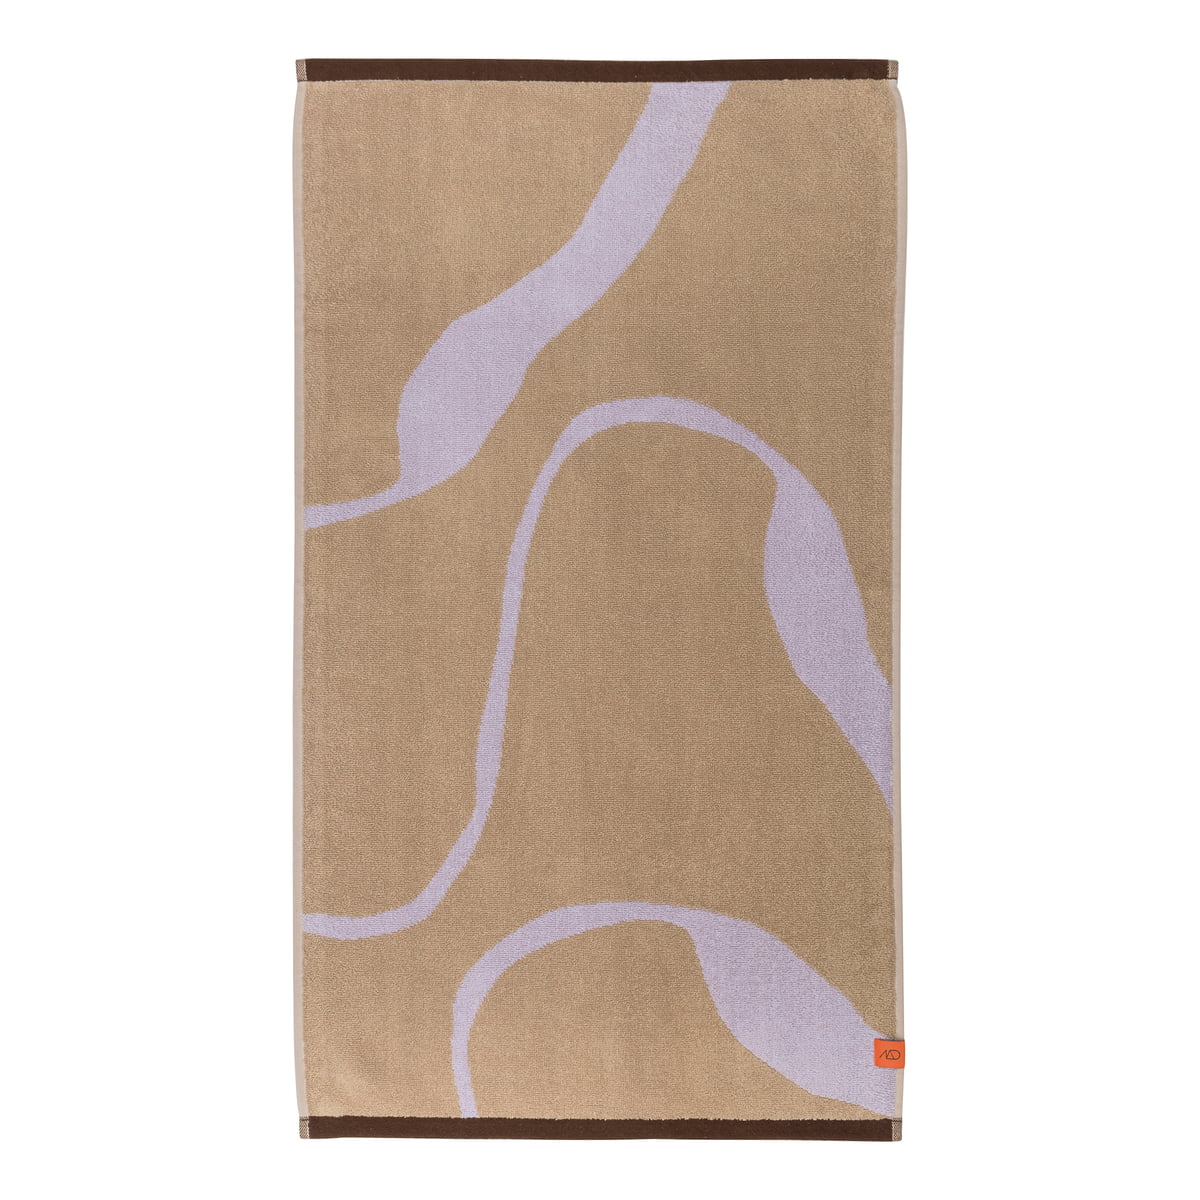 mette ditmer - nova arte serviette de bain, 70 x 133 cm, sable / violet